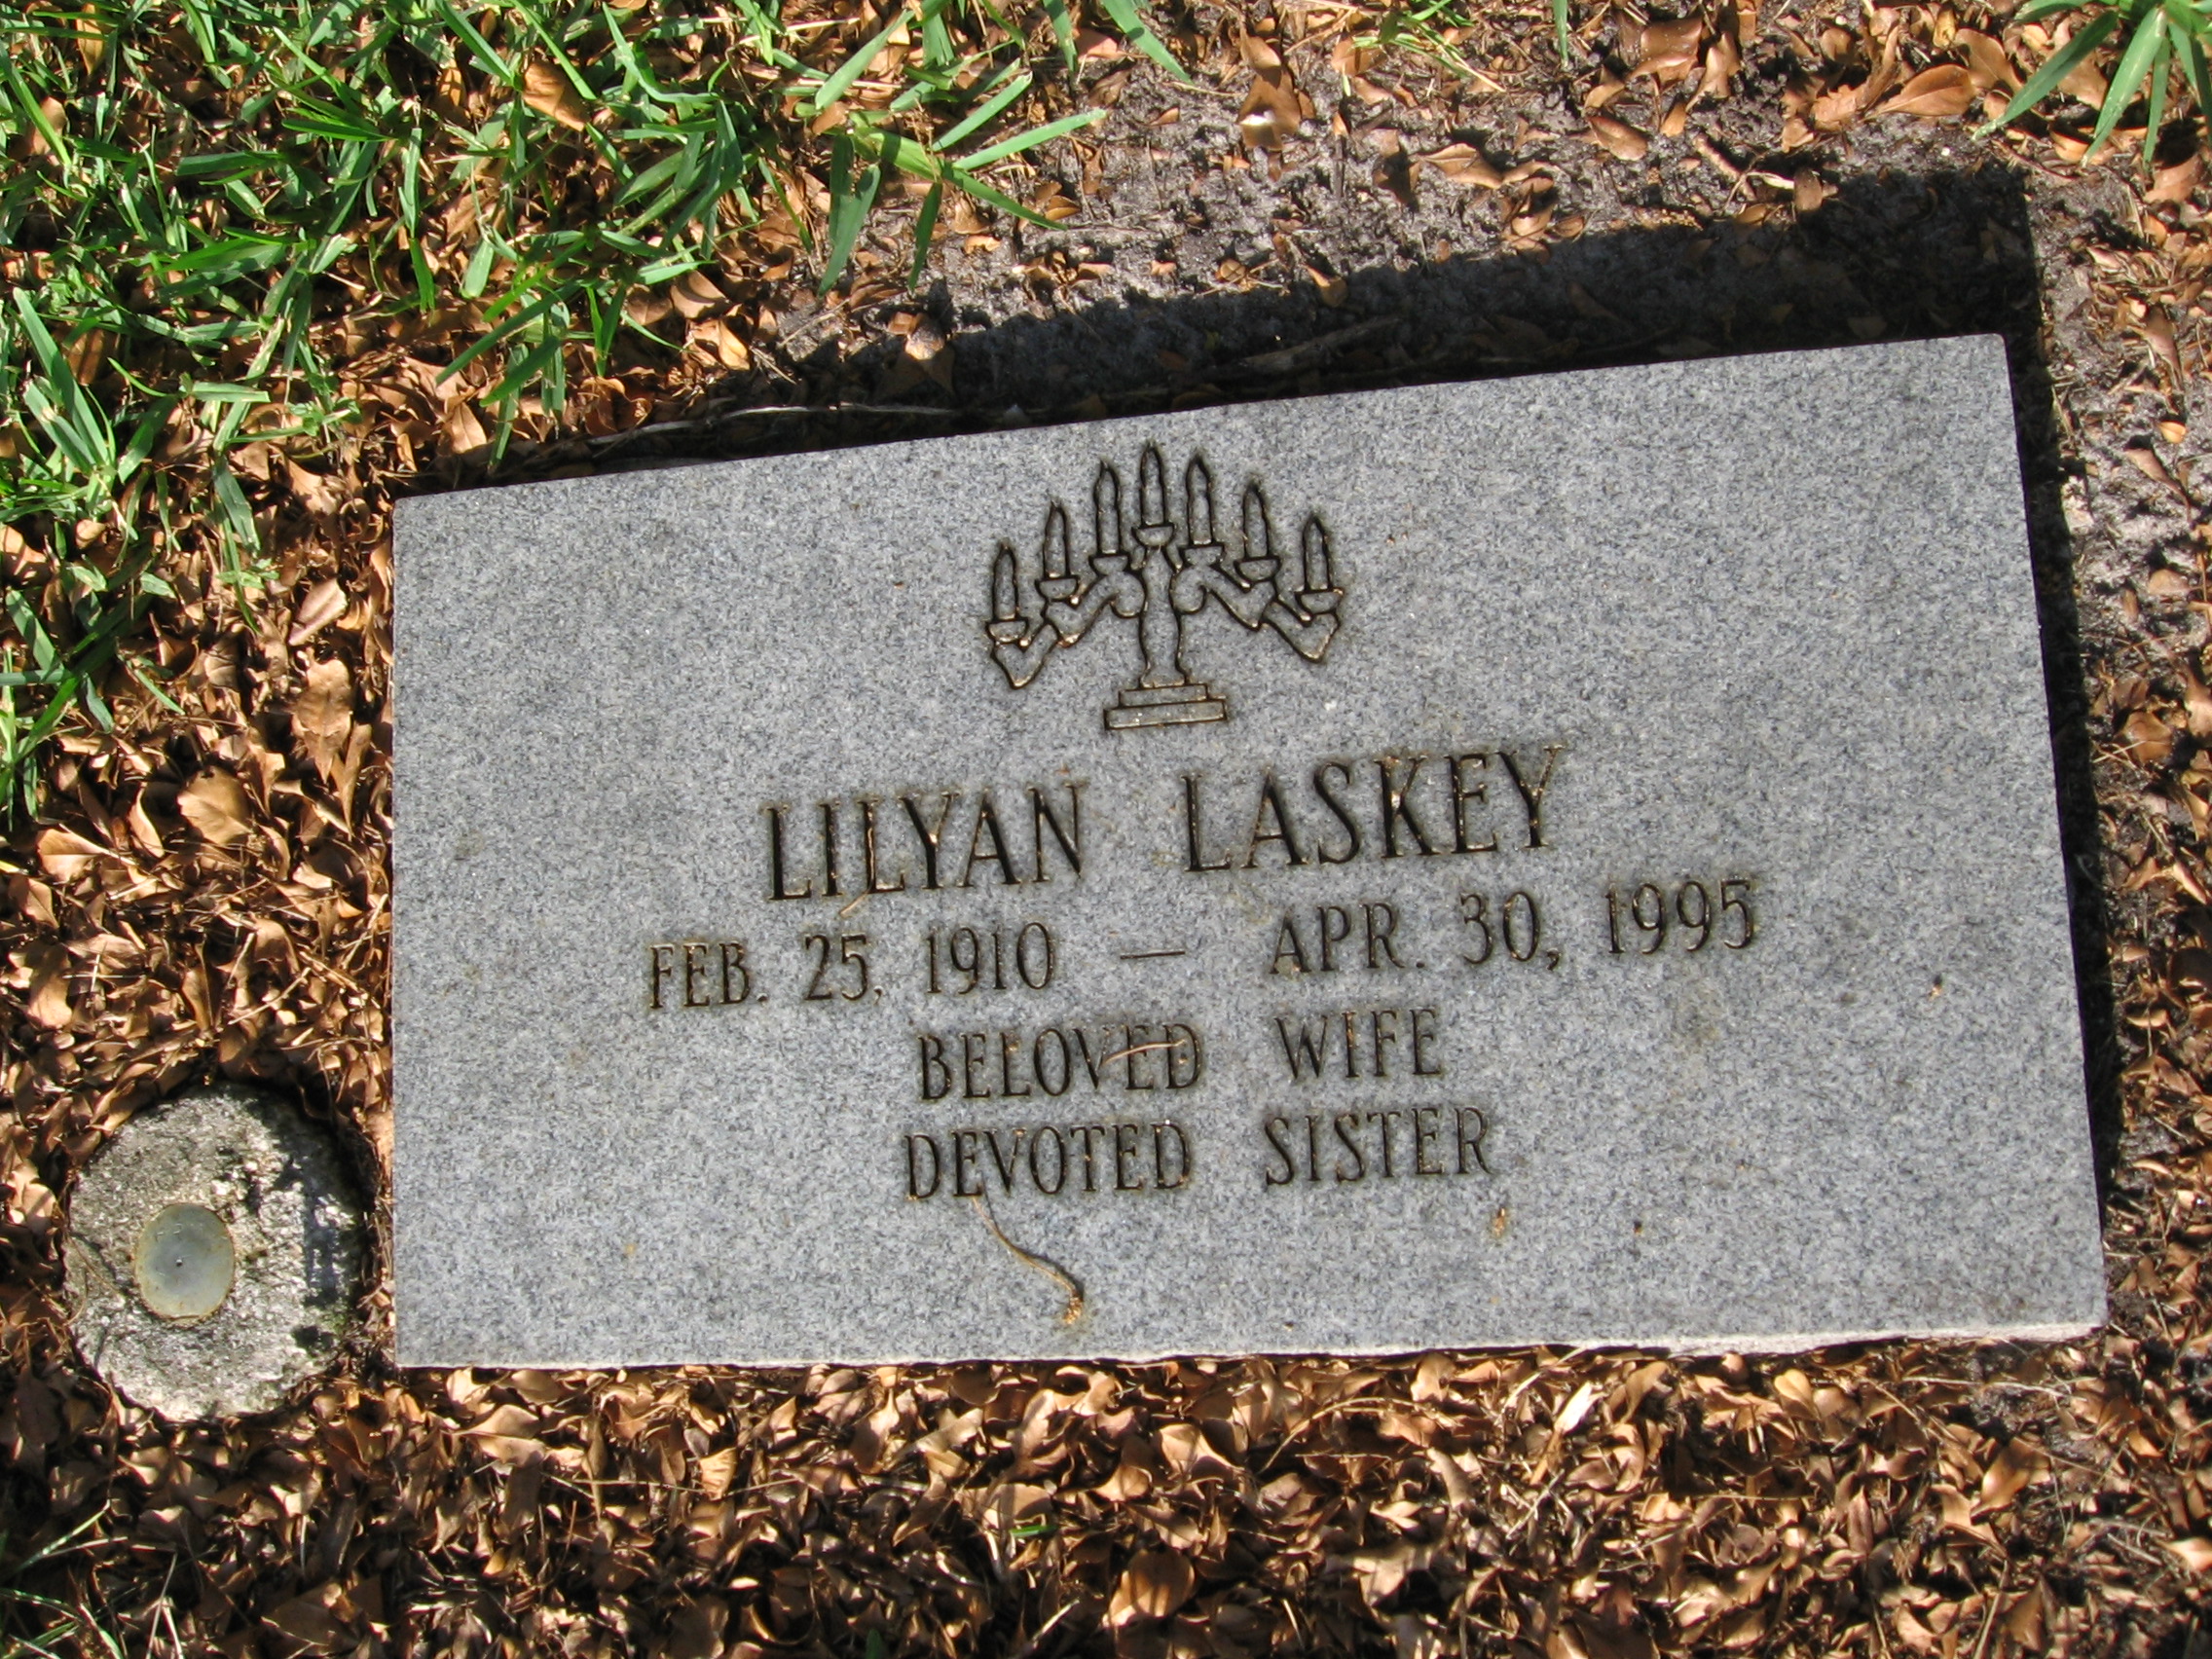 Lilyan Laskey